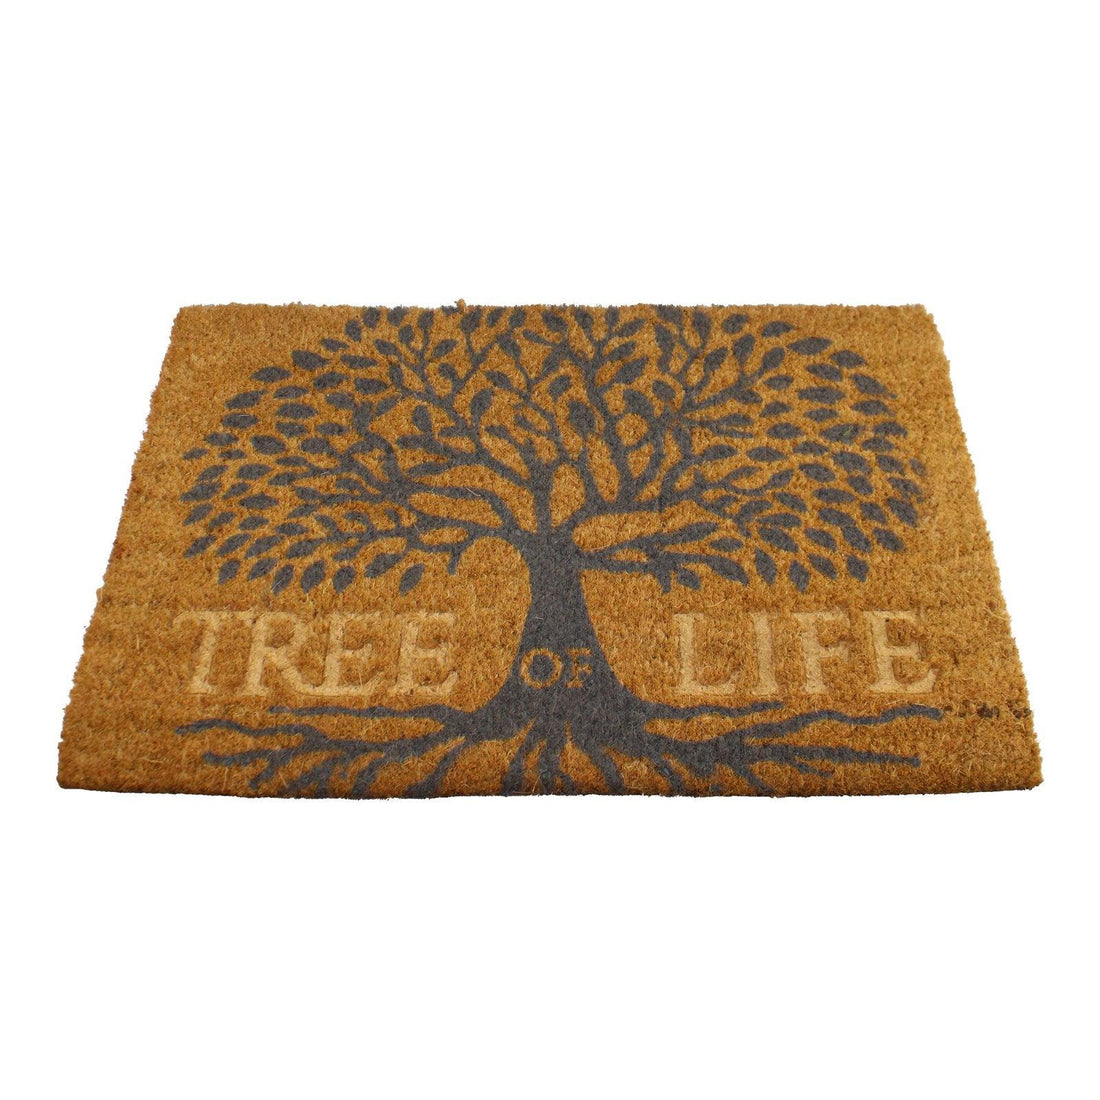 Tree Of Life Design Coir Doormat, 60x40cm - £24.99 - Doormats 